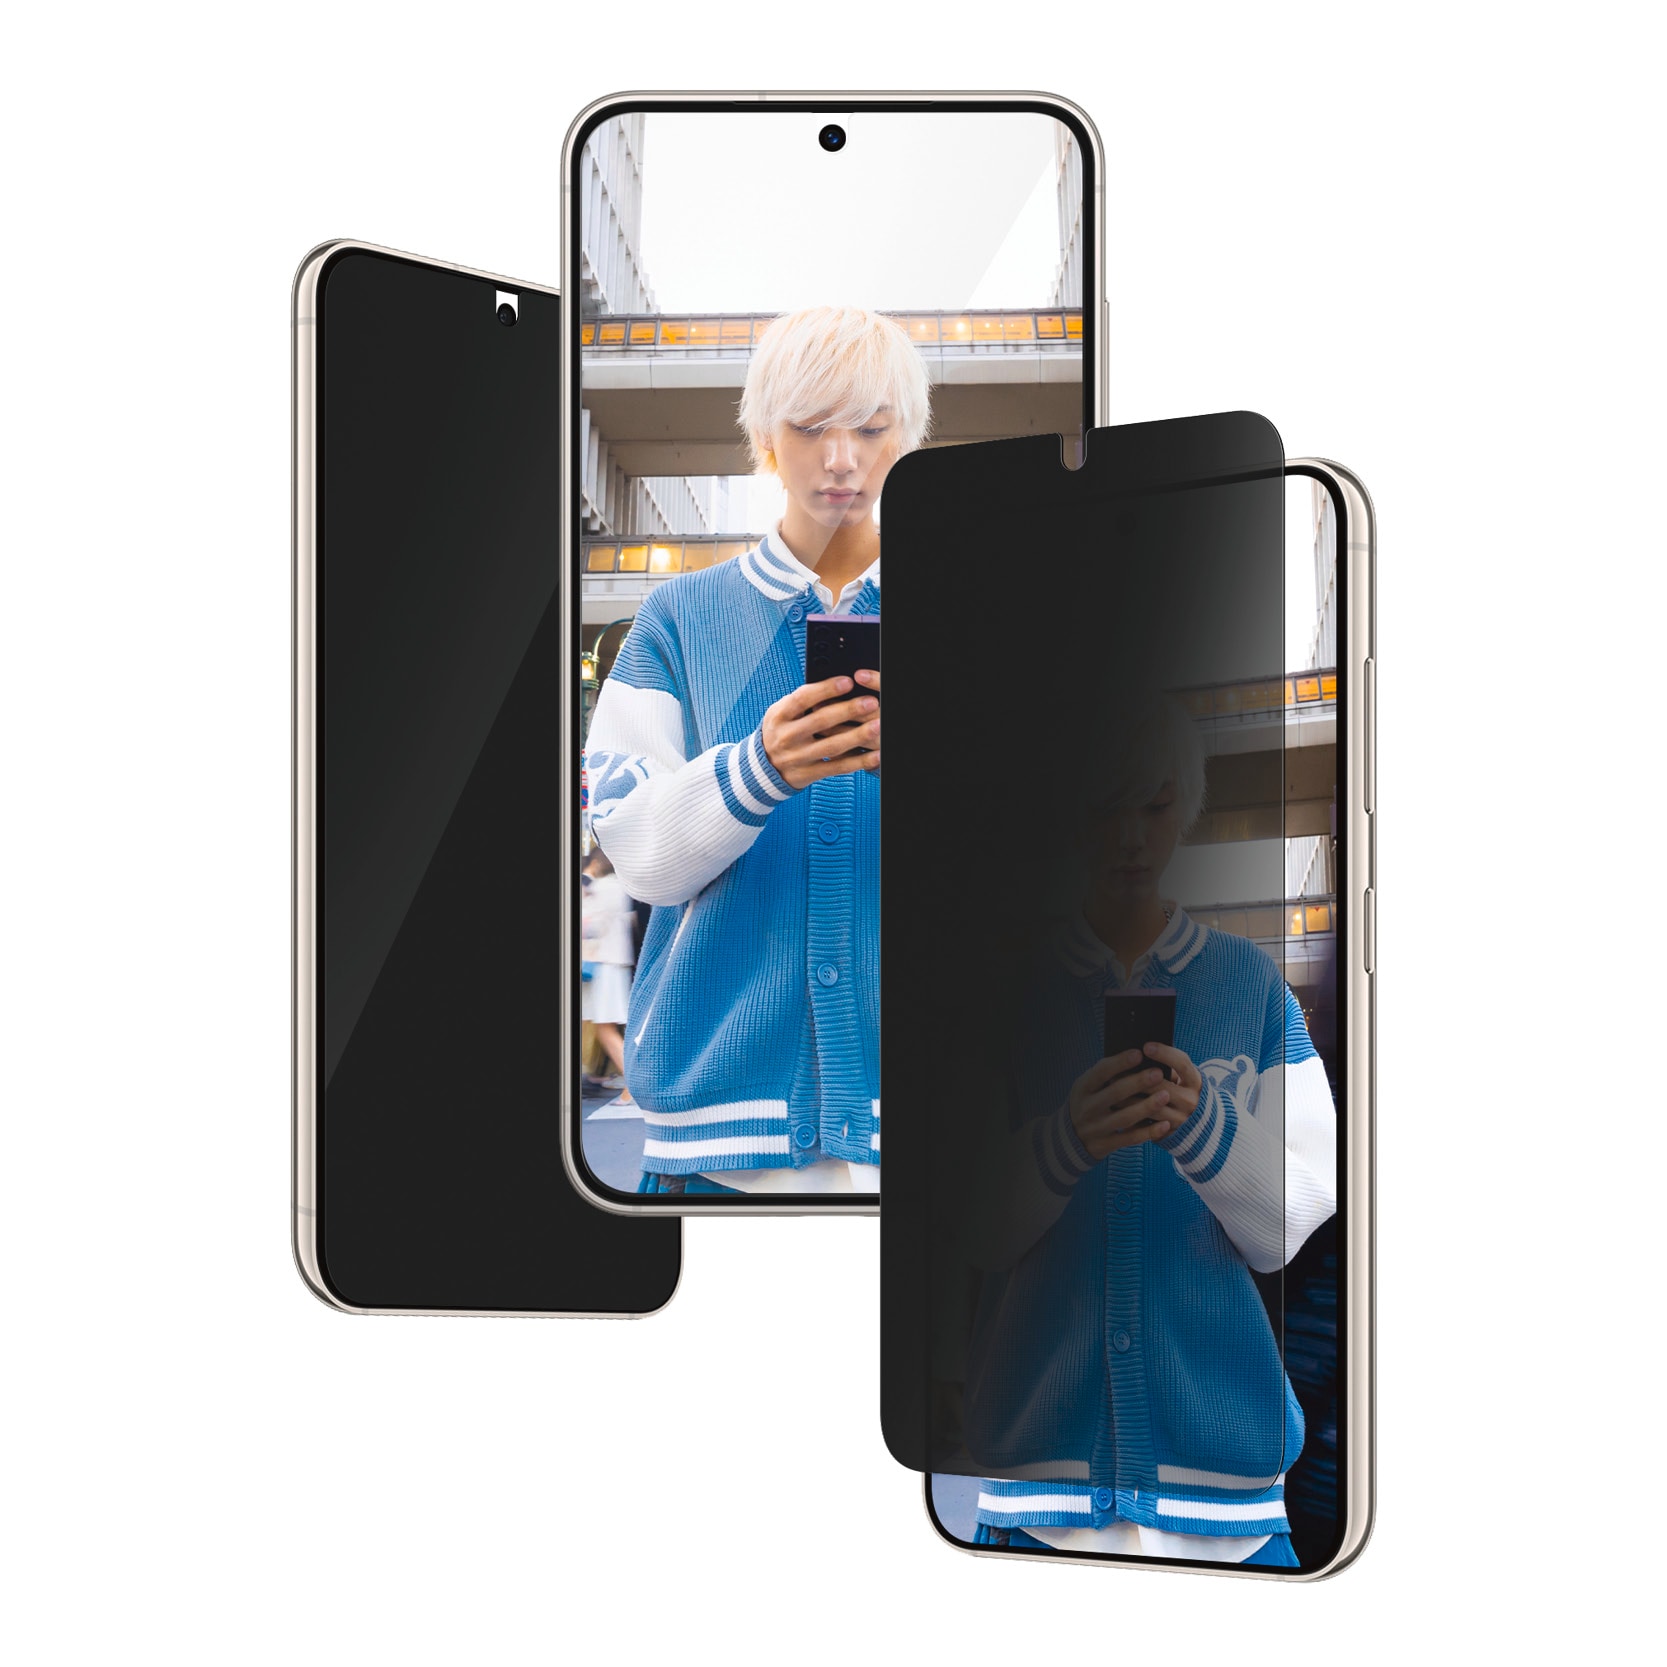 PanzerGlass Displayschutzglas »Ultra Wide Fit Privacy Screen Protector«, für Samsung Galaxy S24, Displayschutzfolie, stoßfest, kratzbeständig